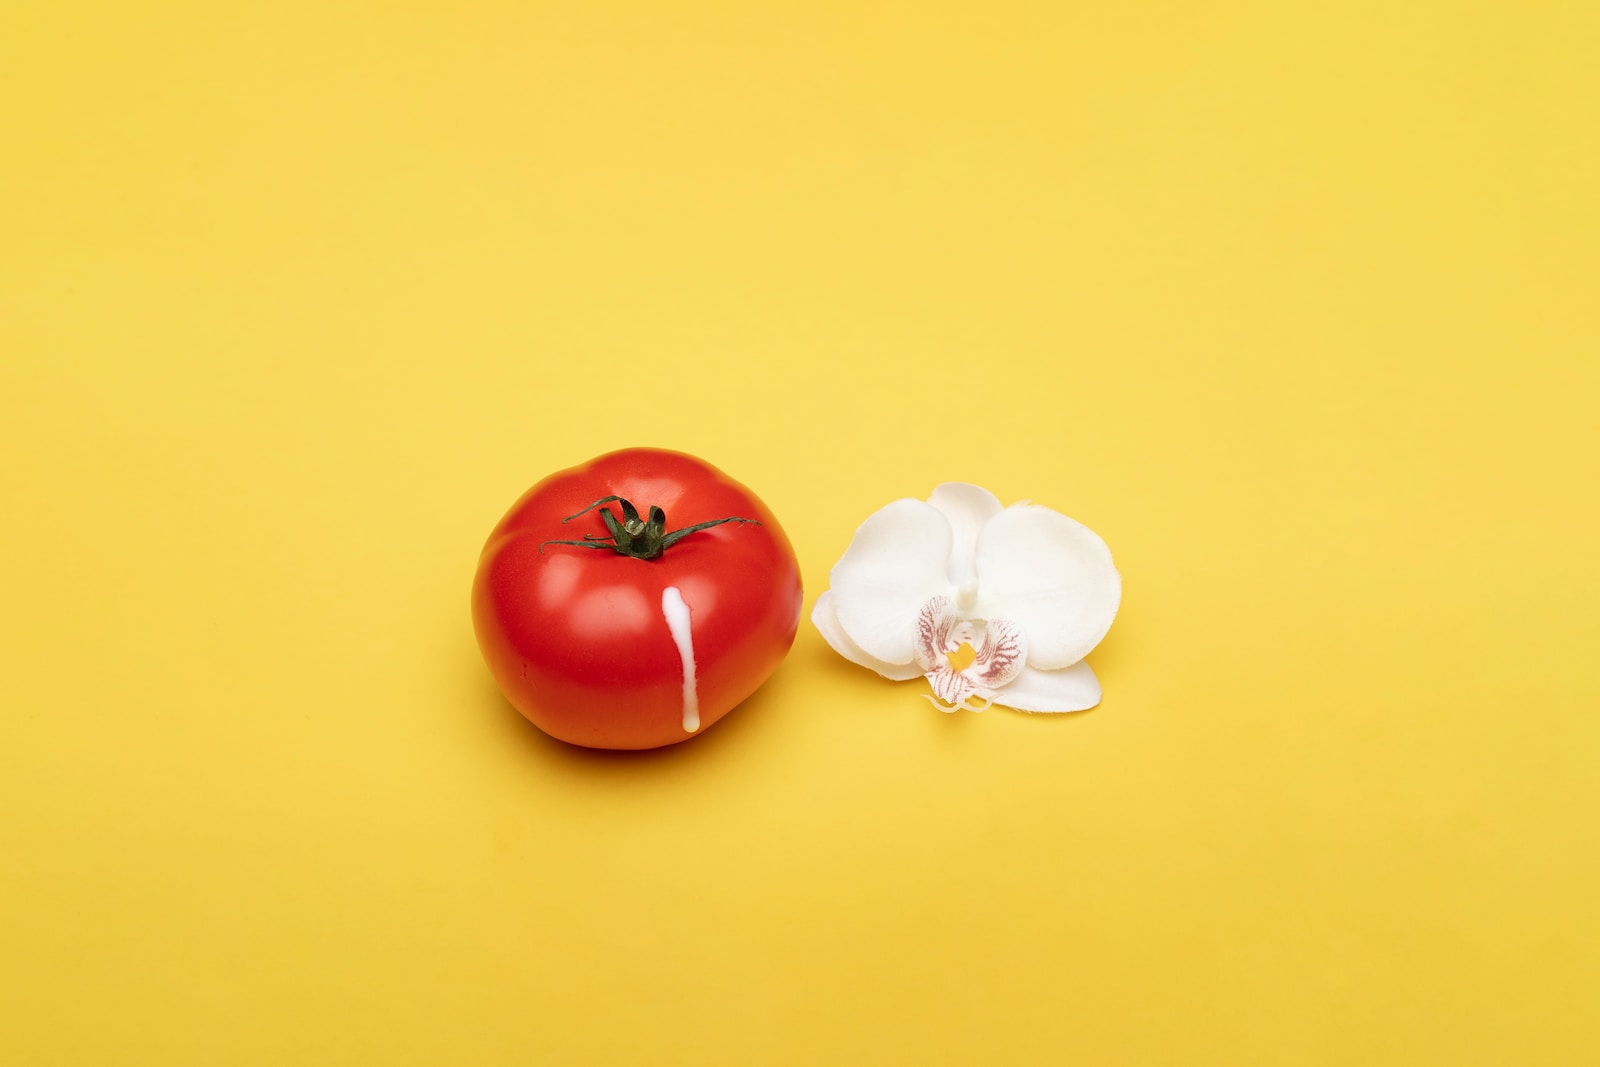 red tomato beside white flower